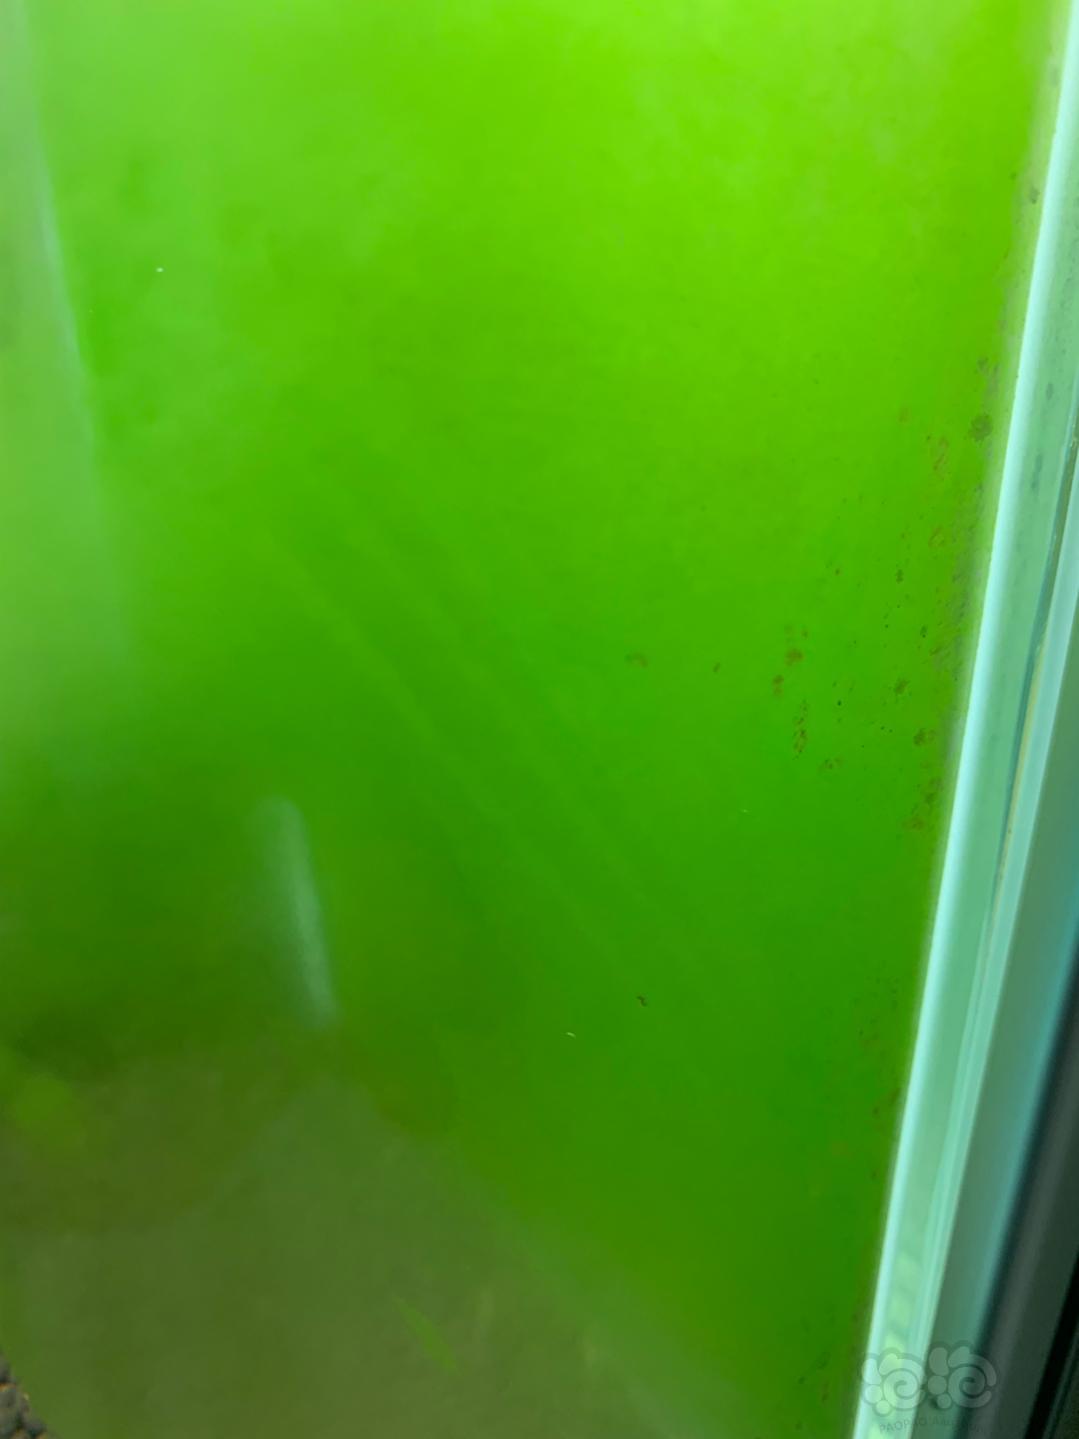 藻象绿绿的  看着很舒服-图1